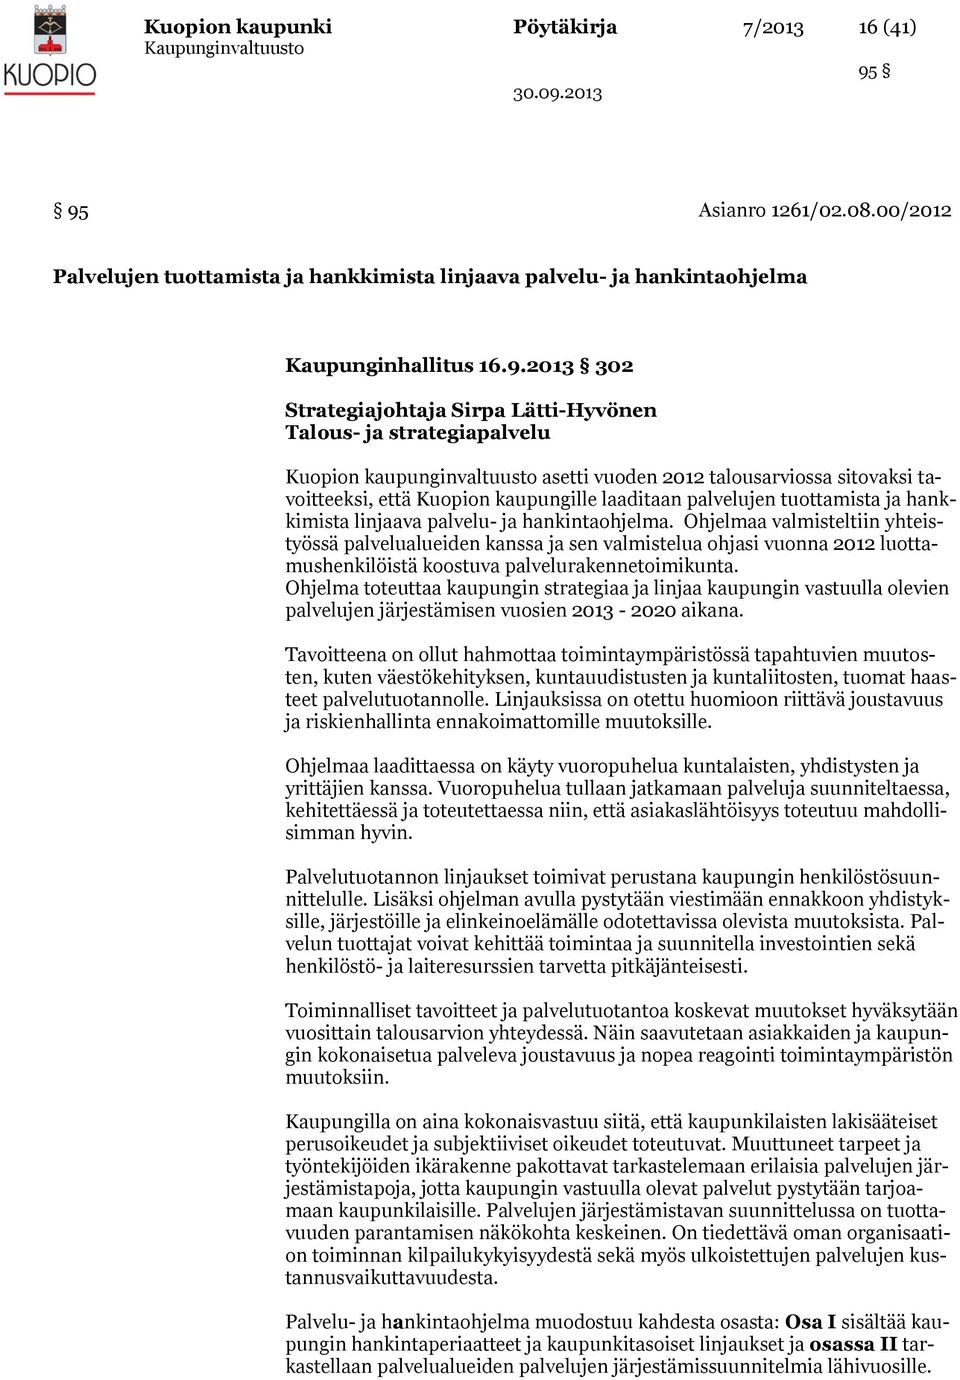 strategiapalvelu Kuopion kaupunginvaltuusto asetti vuoden 2012 talousarviossa sitovaksi tavoitteeksi, että Kuopion kaupungille laaditaan palvelujen tuottamista ja hankkimista linjaava palvelu- ja